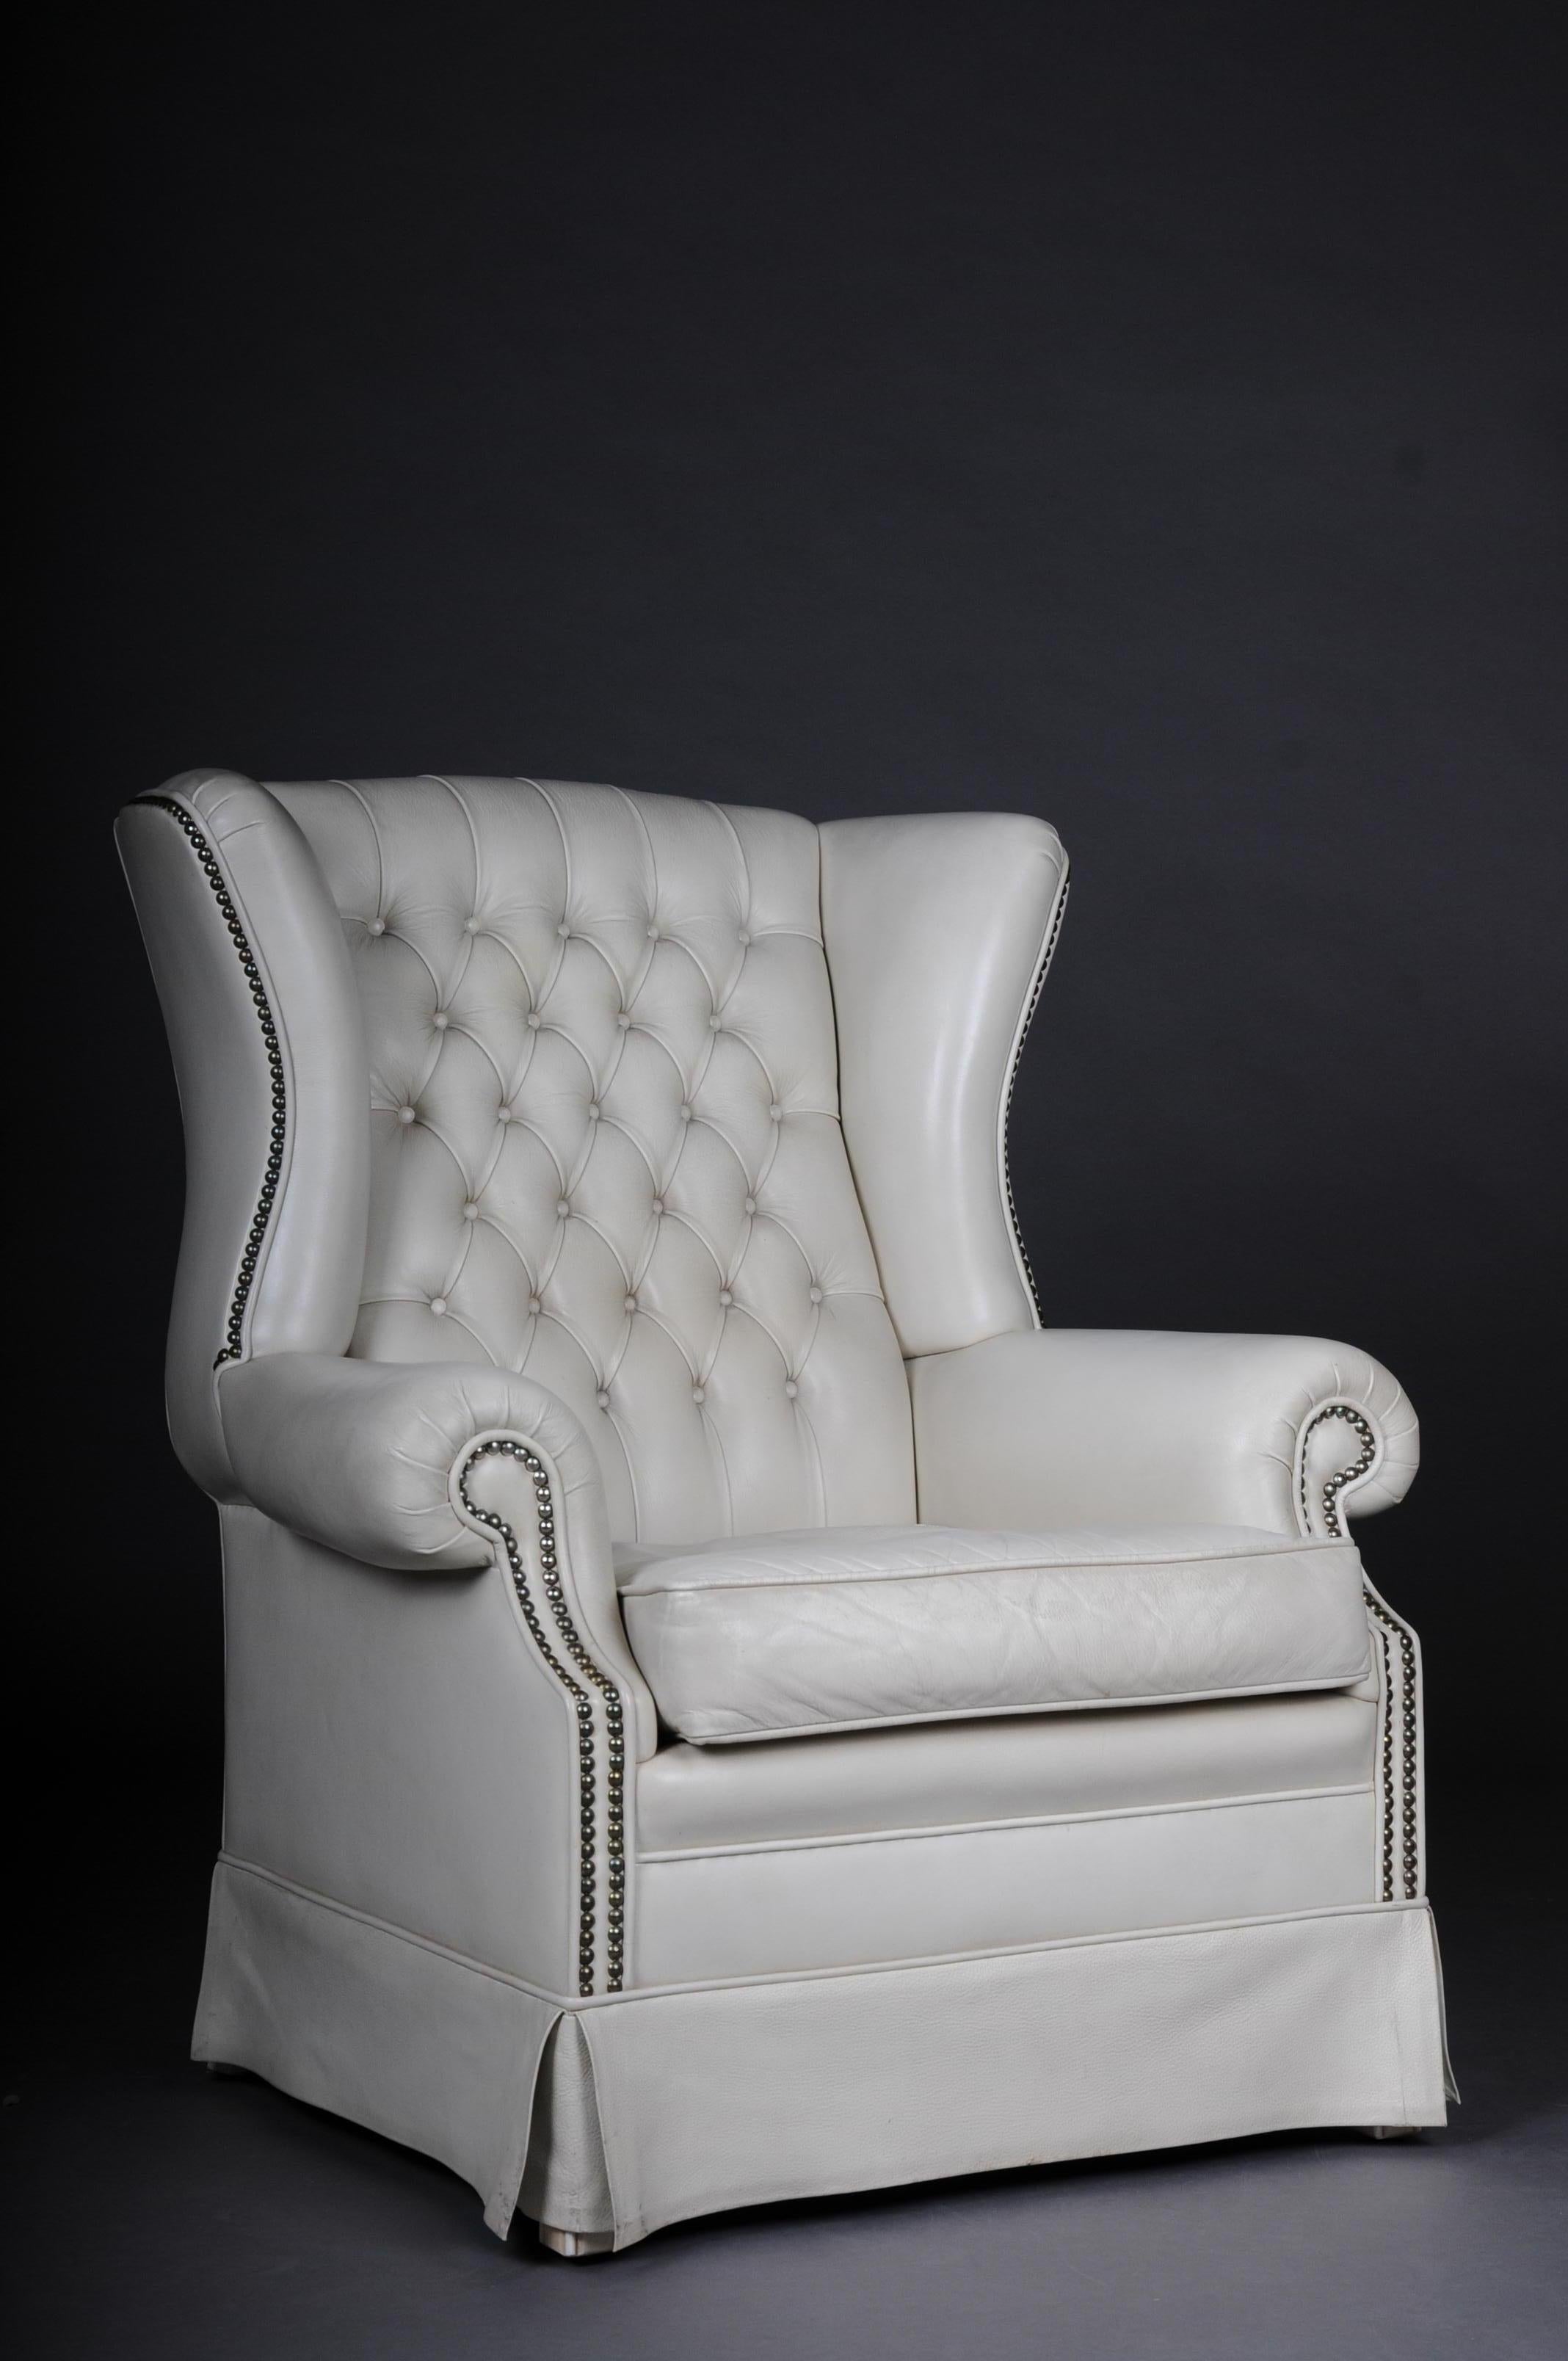 Schöner Vintage Chesterfield Sessel / Clubsessel, weiß

Komplette Polsterei in Chesterfield. Klassische Form und äußerst bequem. 20. Jahrhundert
Hoher und breiter Rücken für optimalen Komfort. Echtes Leder, weiß. Abnehmbares Sitzkissen.
Elegant